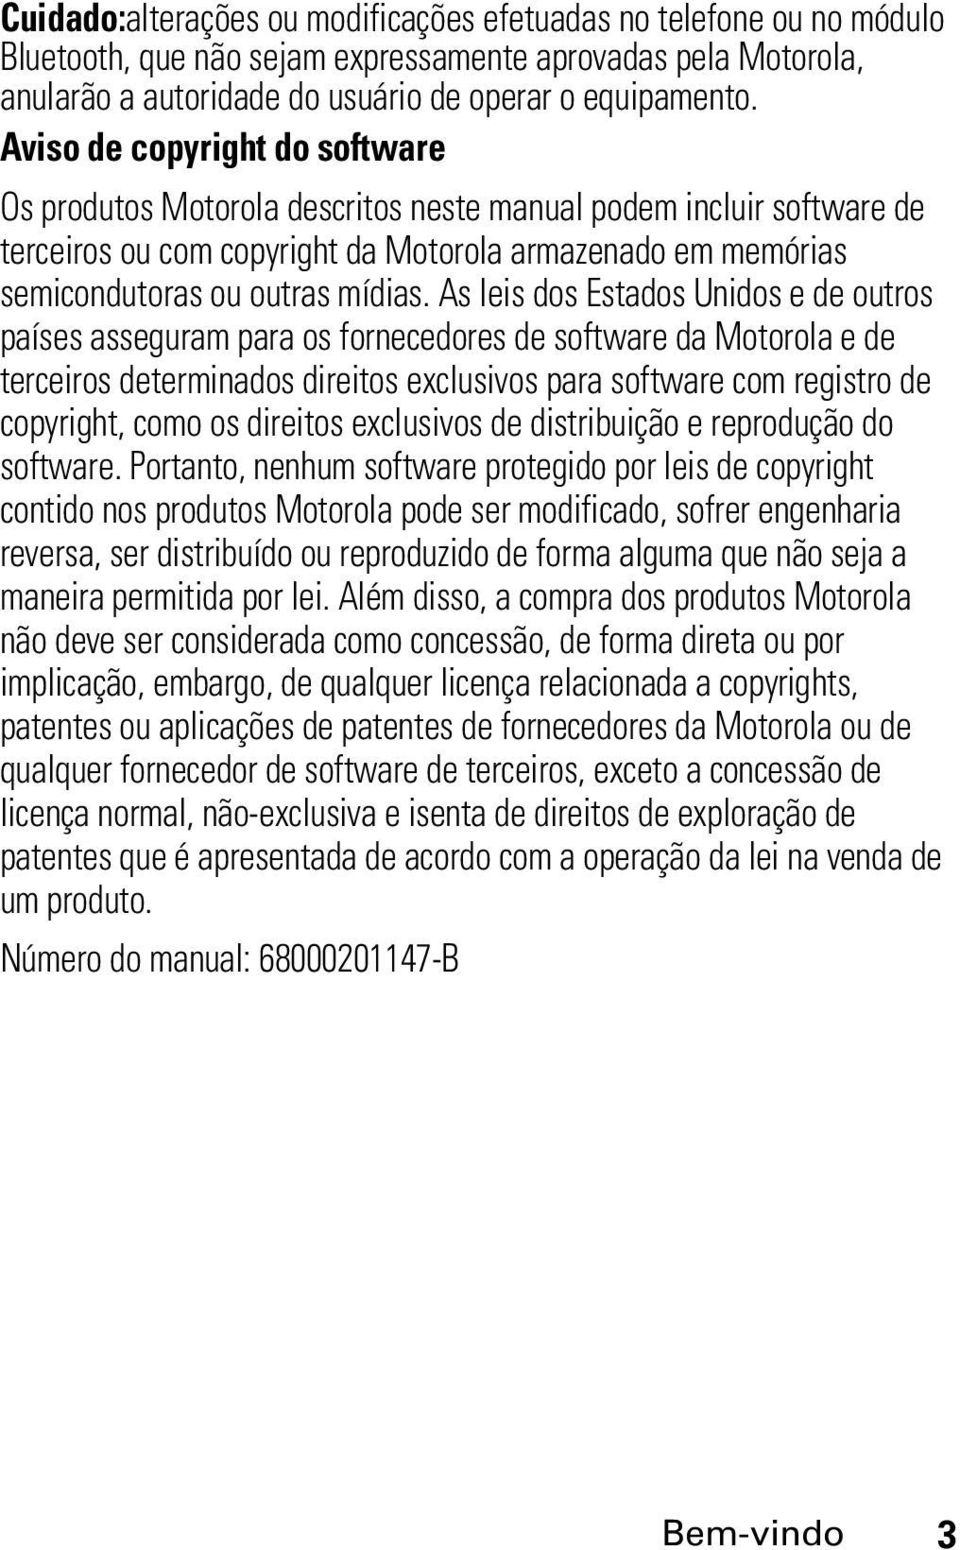 As leis dos Estados Unidos e de outros países asseguram para os fornecedores de software da Motorola e de terceiros determinados direitos exclusivos para software com registro de copyright, como os